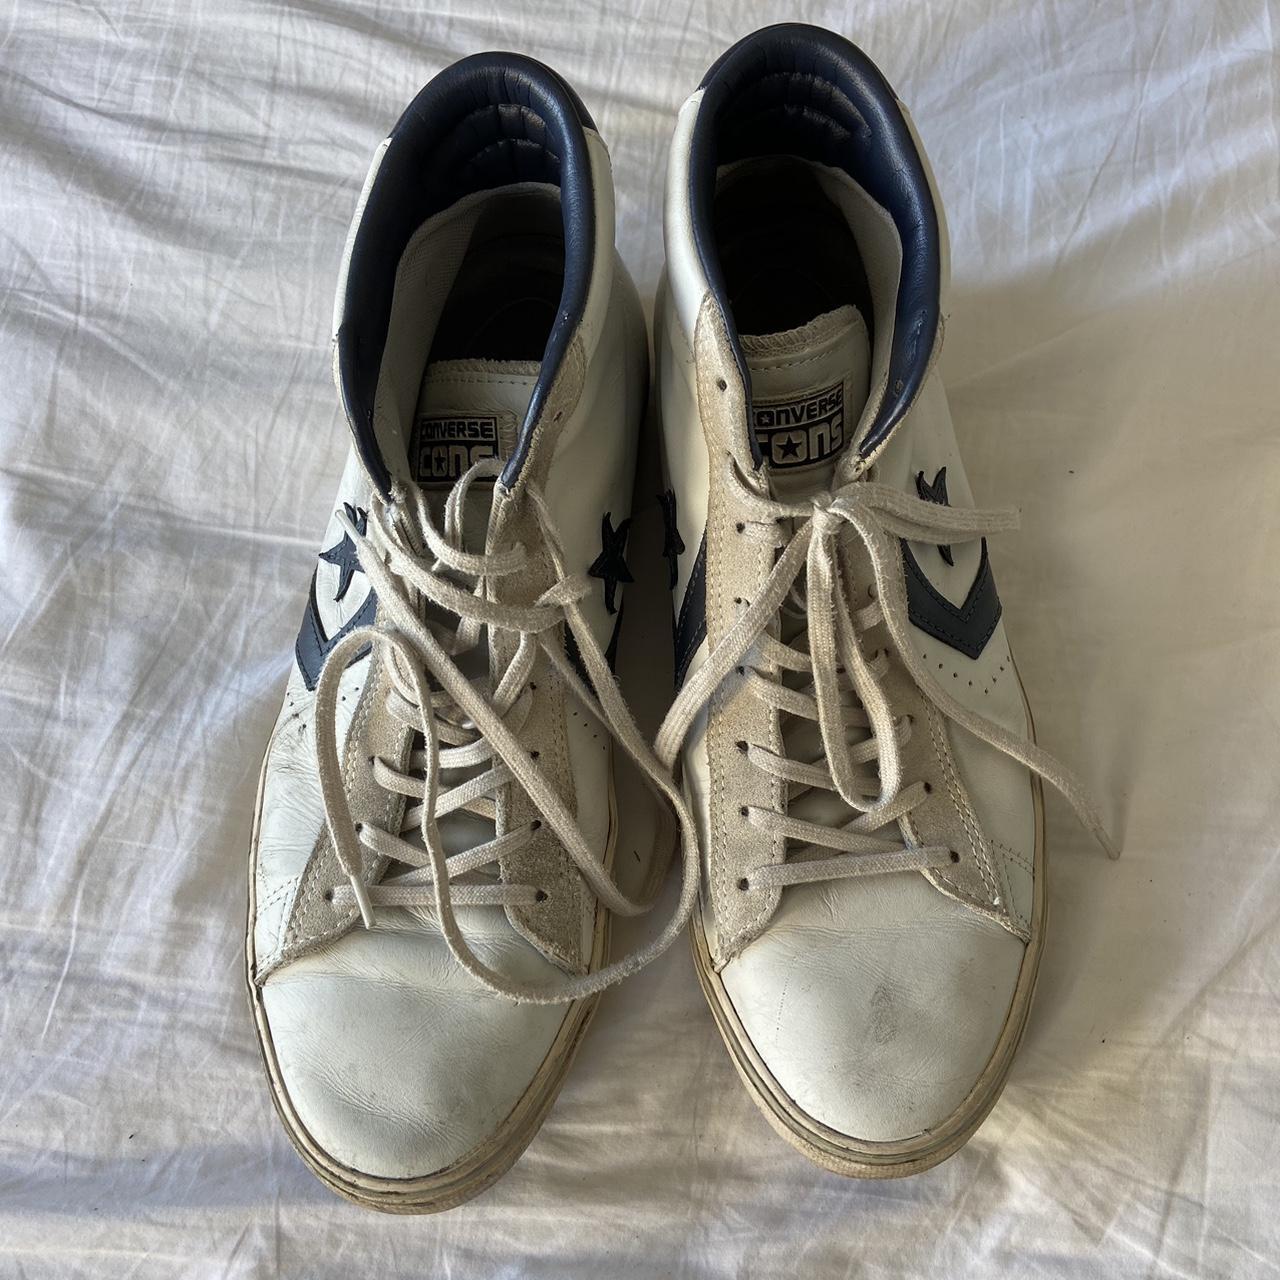 Vintage converse high top shoes, size 10 - Depop